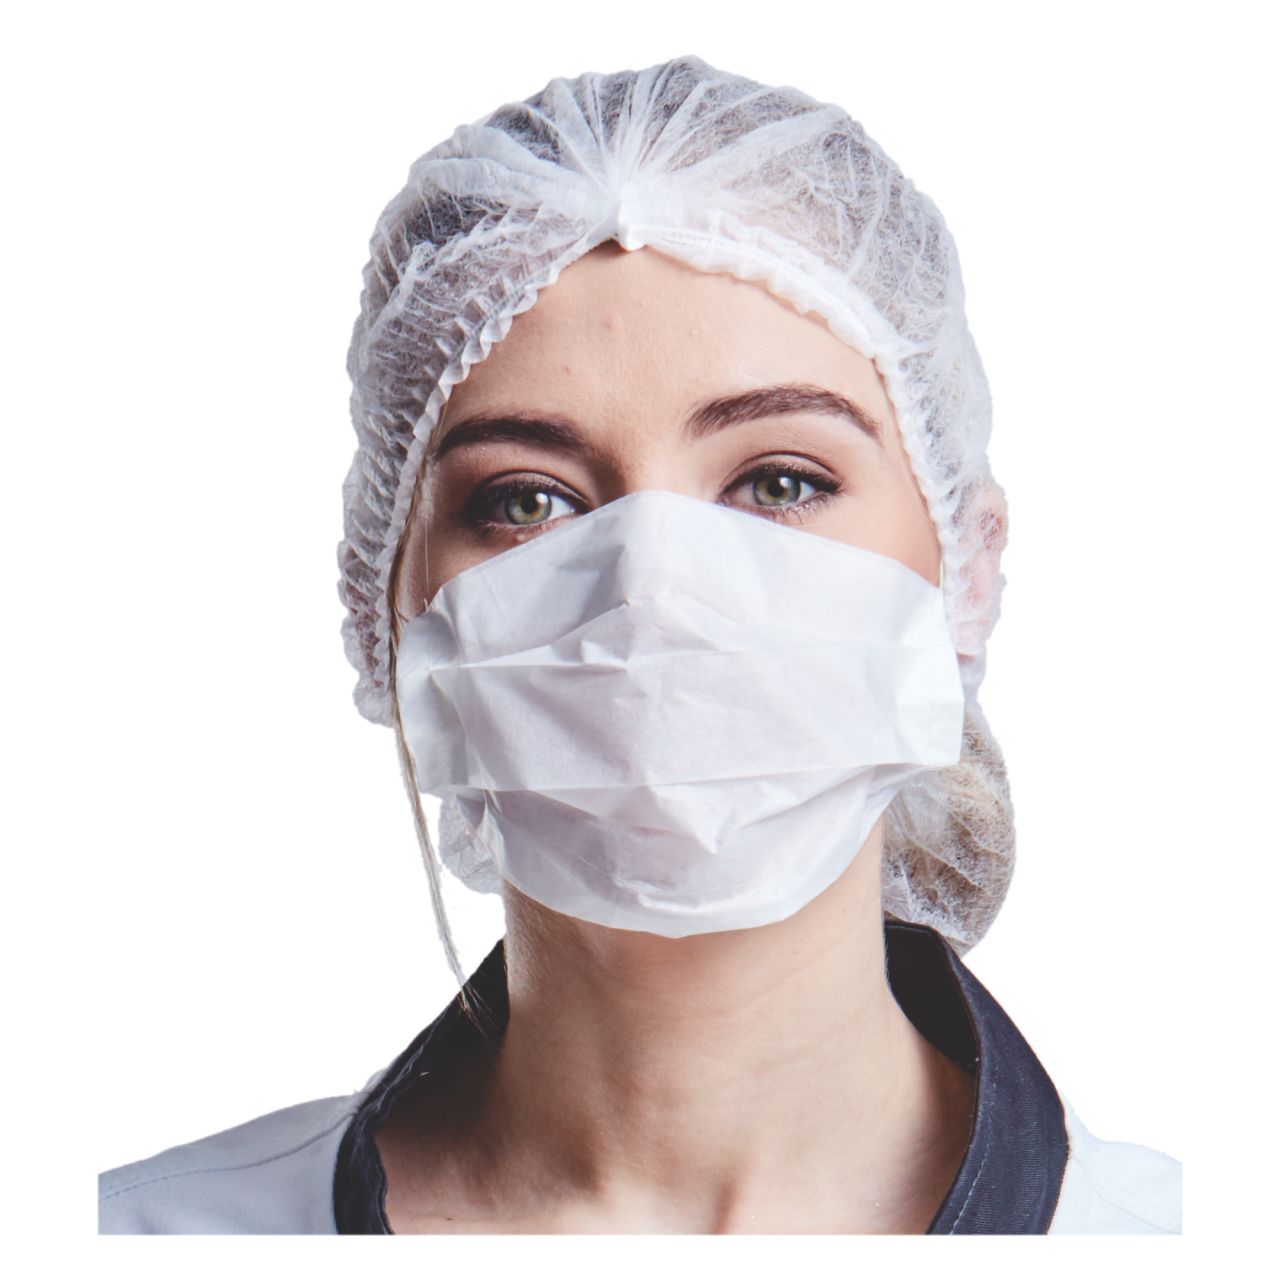 Nurse Medical Mask PNG File